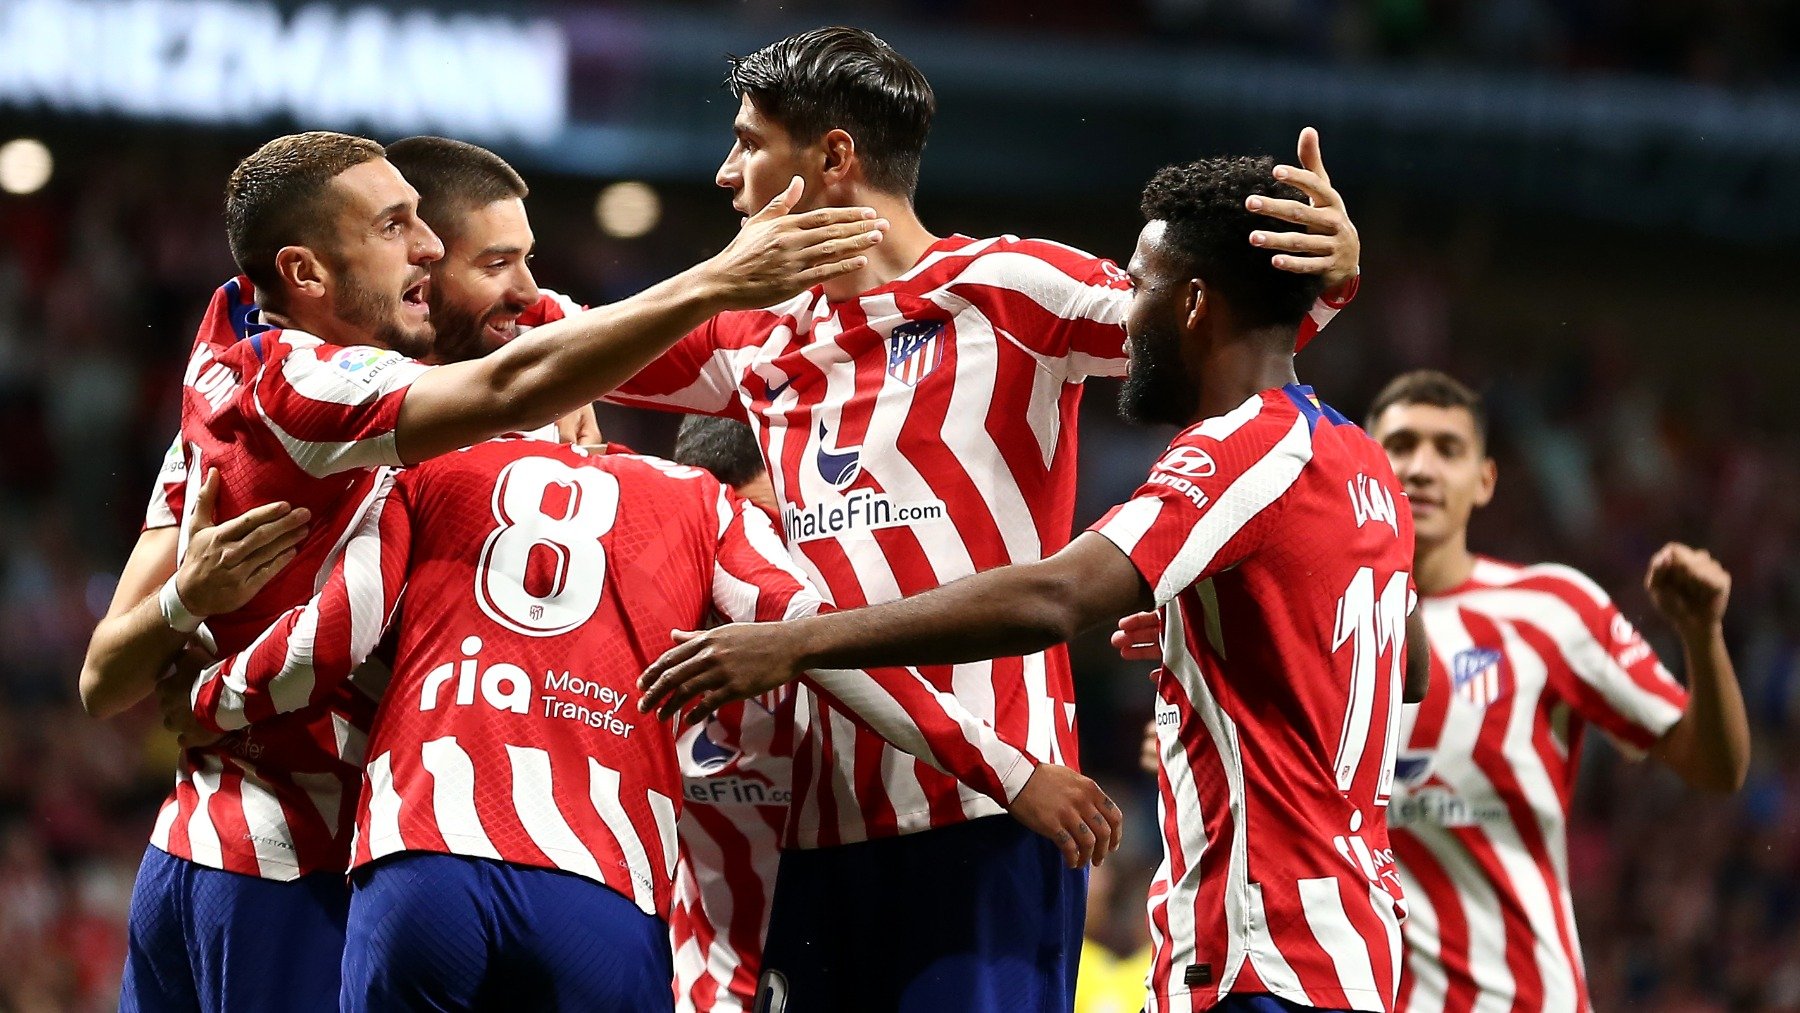 Jugadores del Atlético de Madrid celebrando un gol ante el Cádiz. (Getty)